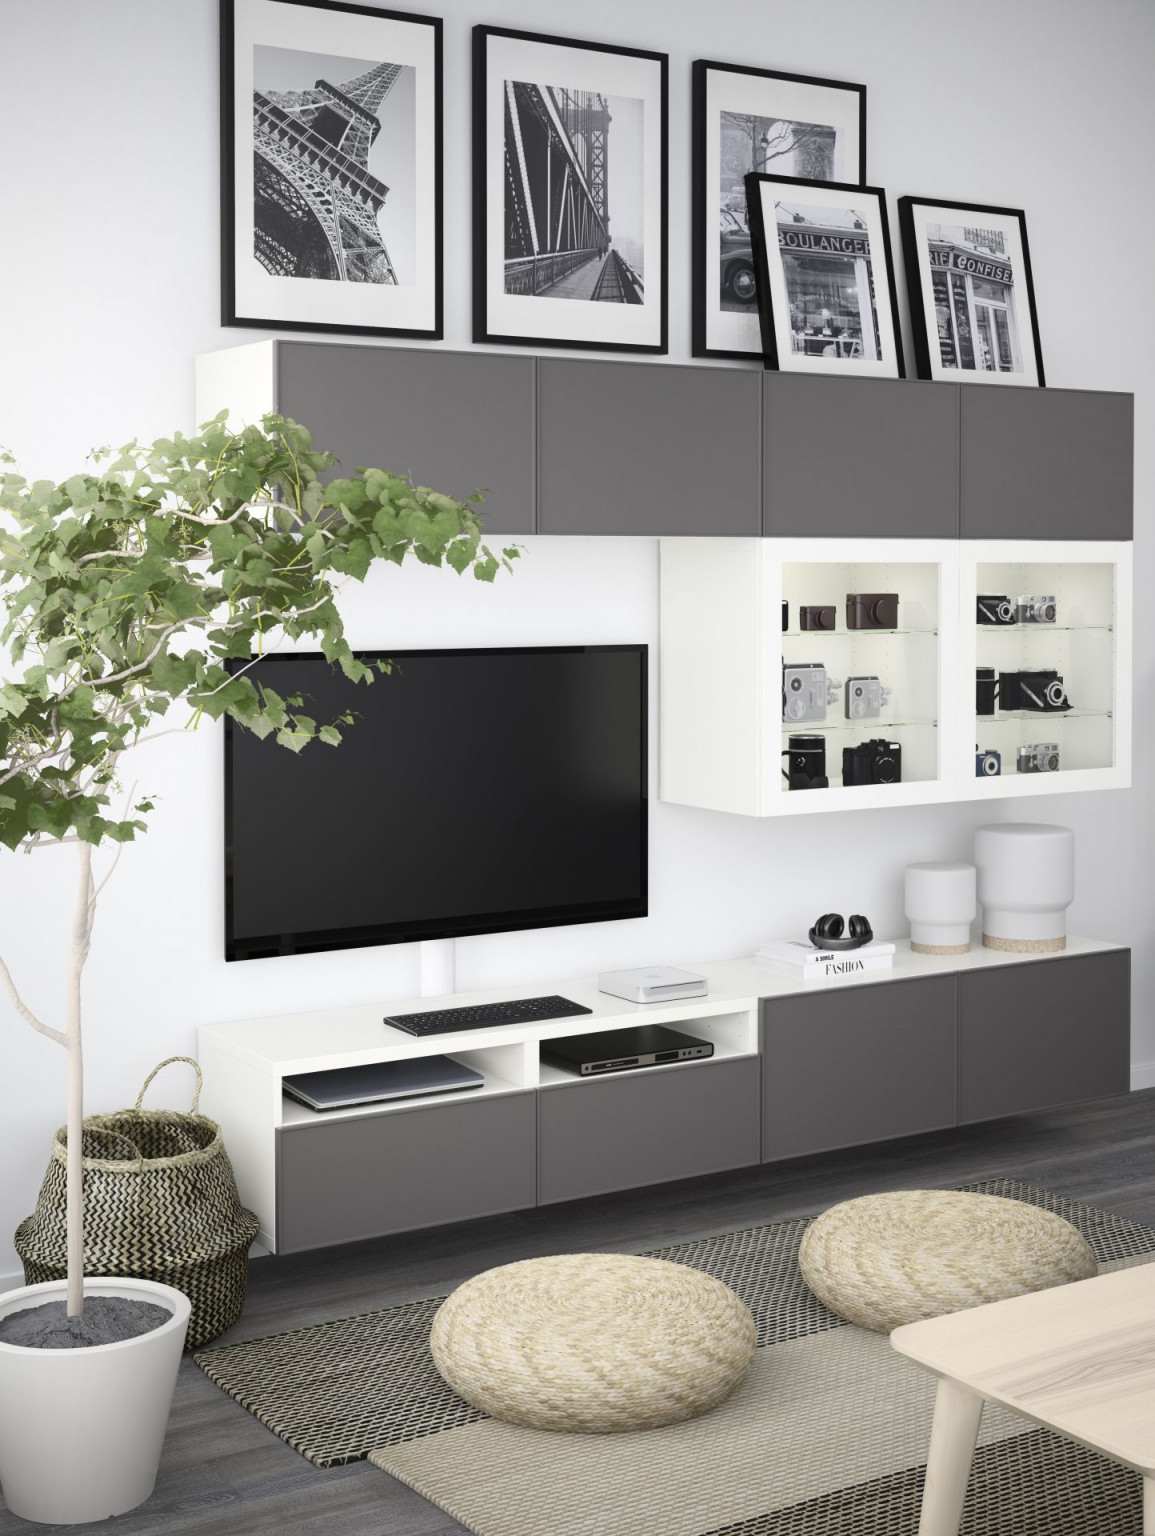 Möbel  Einrichtungsideen Für Dein Zuhause  Wohnzimmer von Wohnzimmer Besta Ideen Bild